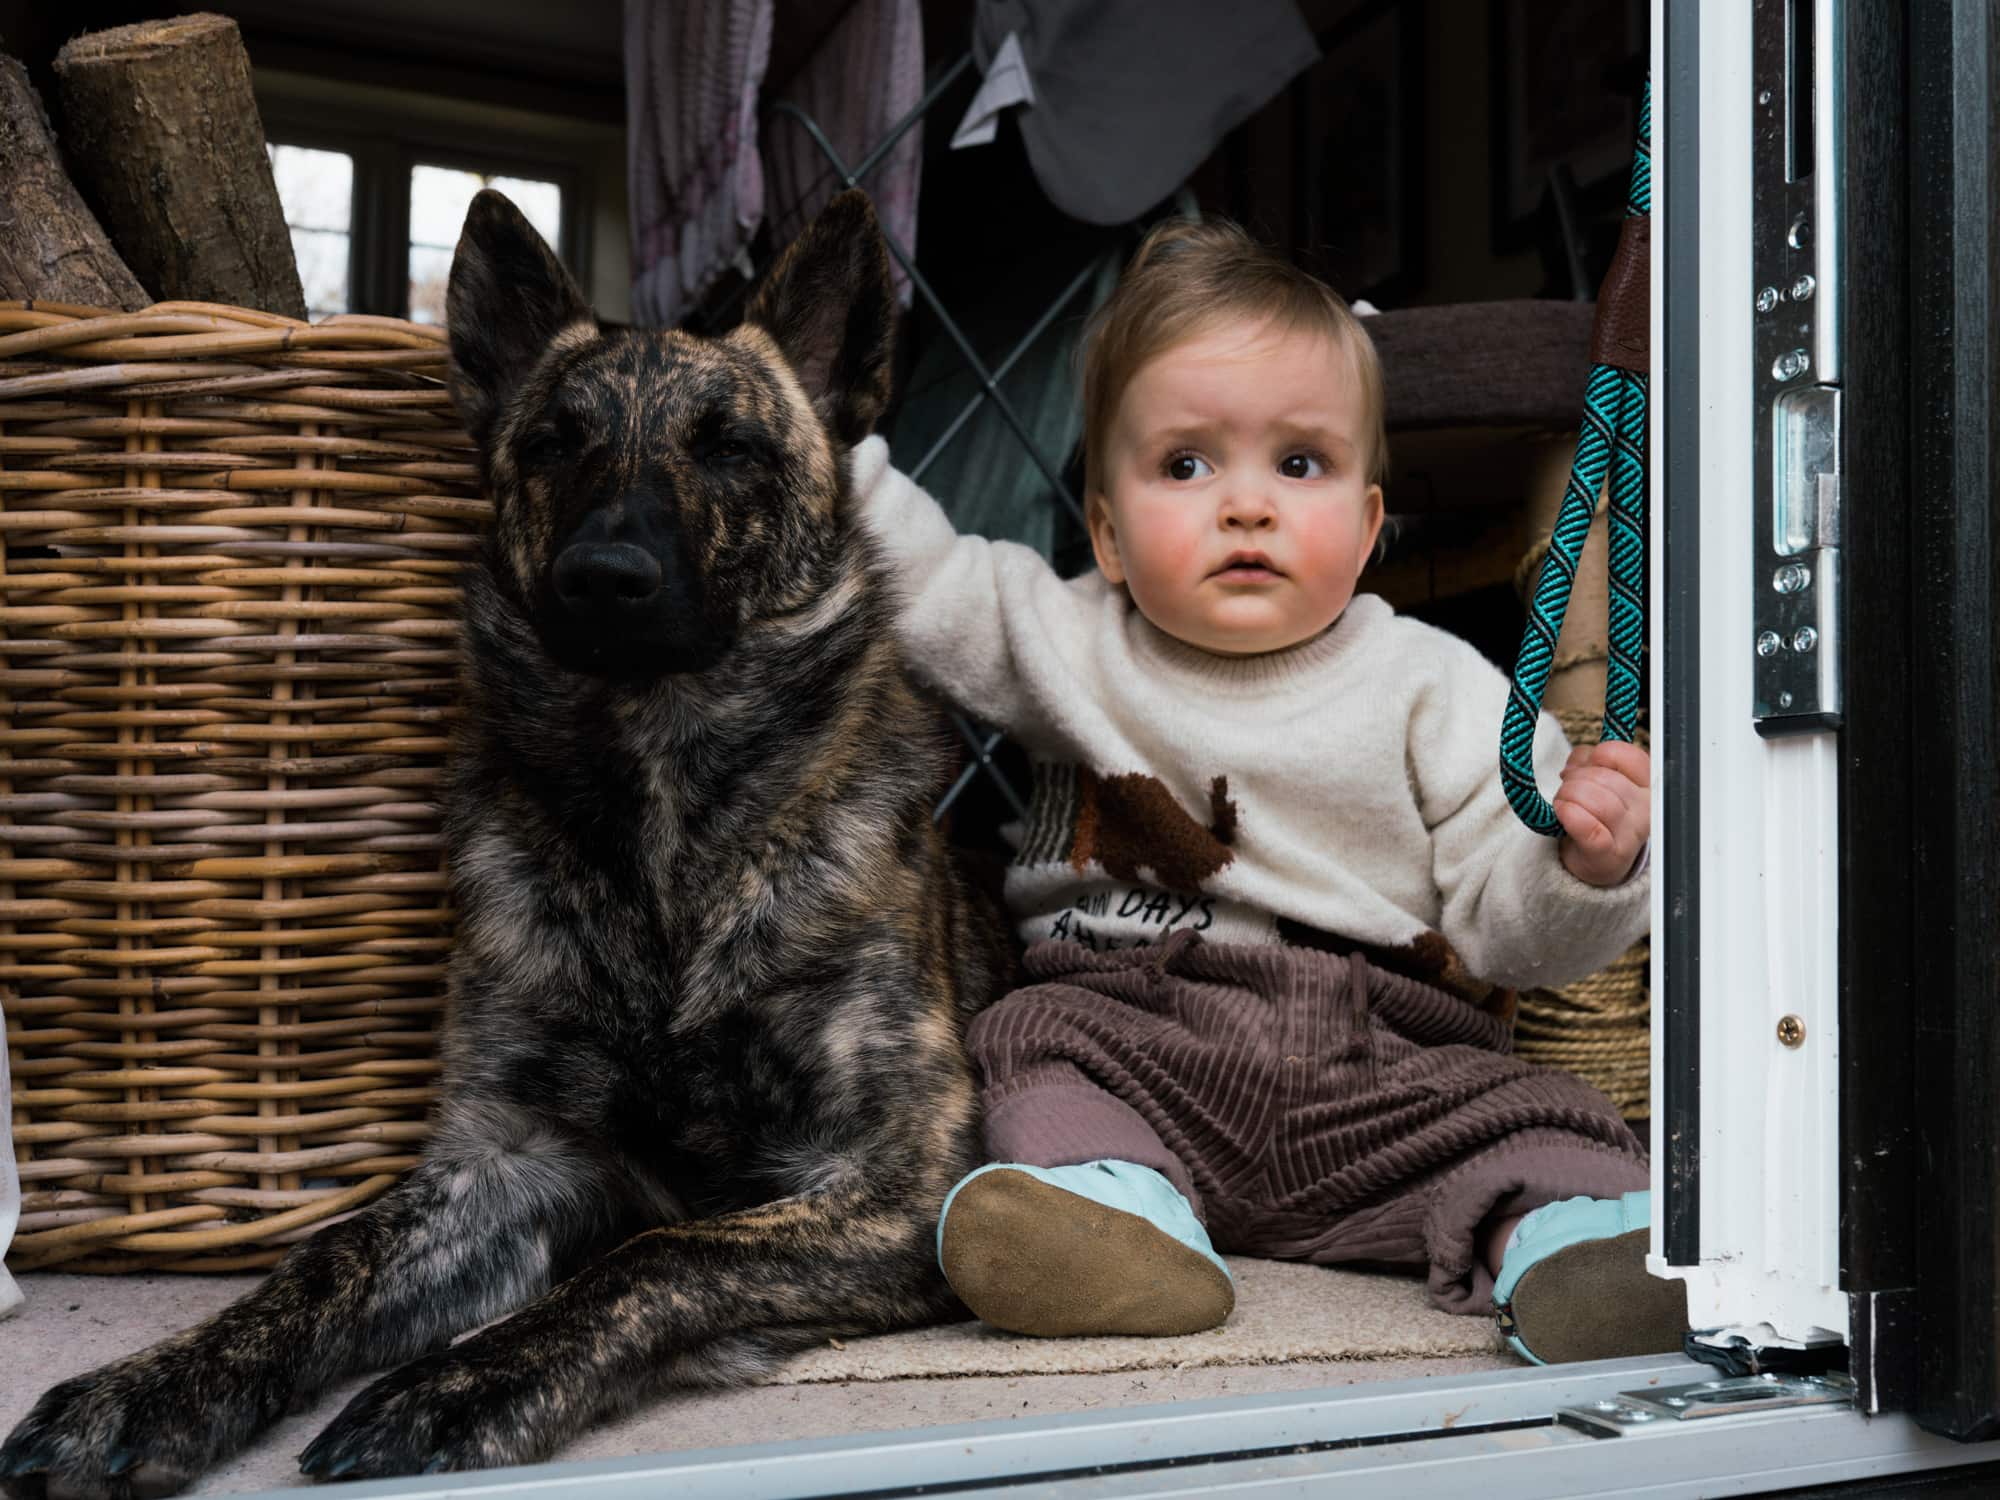 Children & Pet Photography Portfolio Wildly in Love